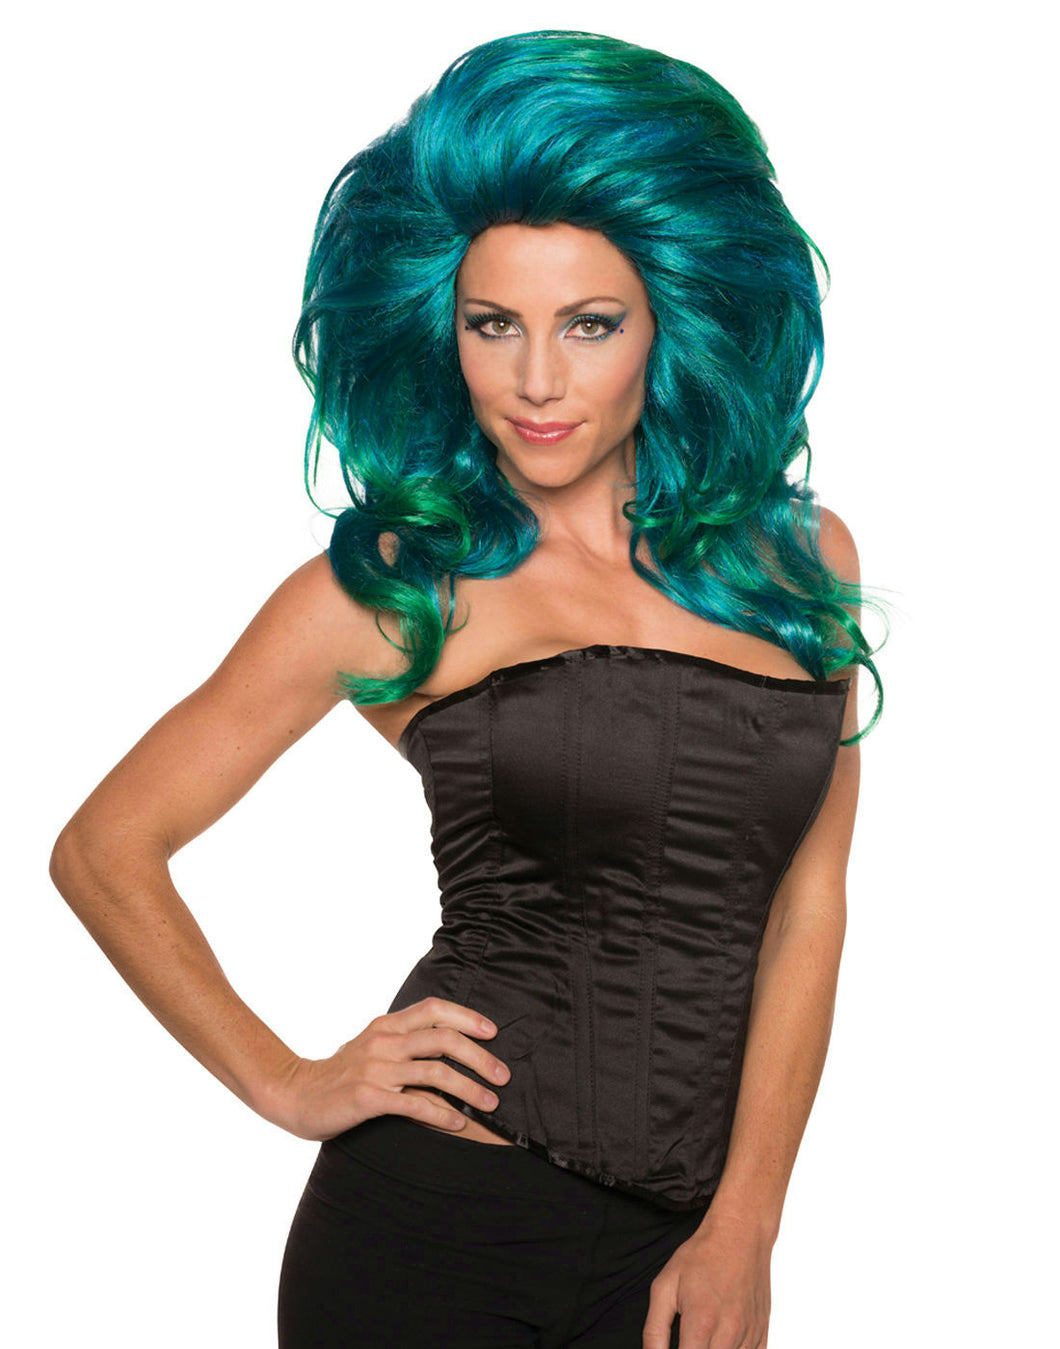 Turquoise Blue Helen Wheels Big Queen Hair Mermaid Costume Wig